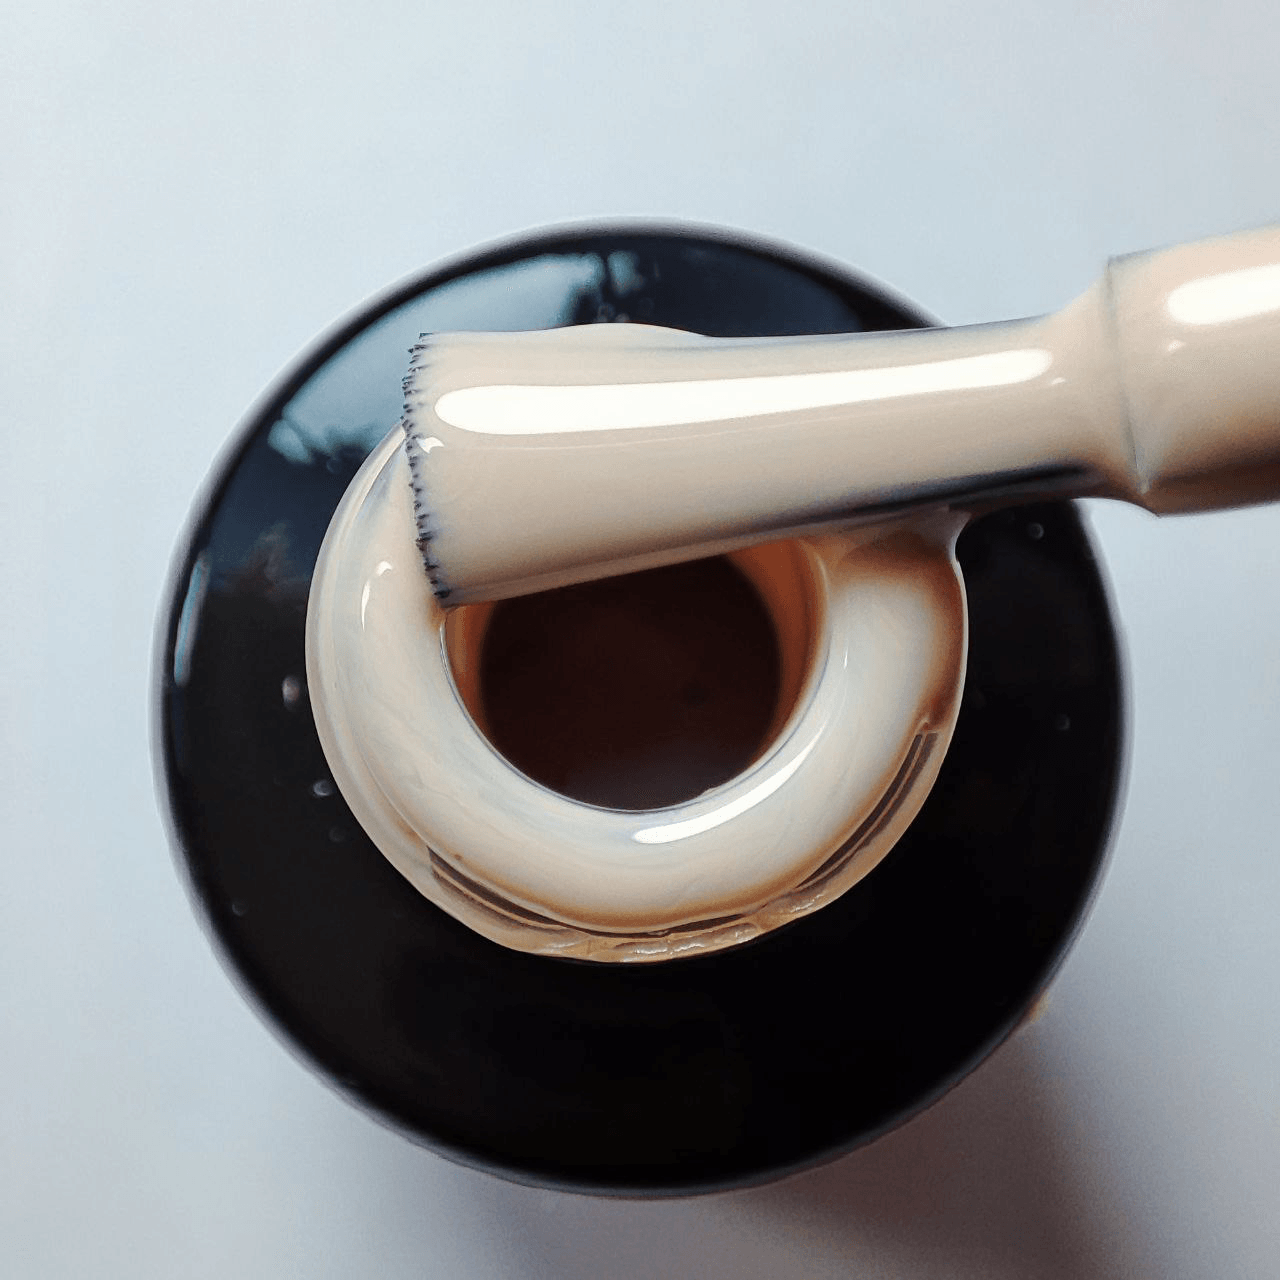 THE GEL POLISH - 77 SOFT NUDE - Semipermanente per unghie da 8ml - Divina Nails